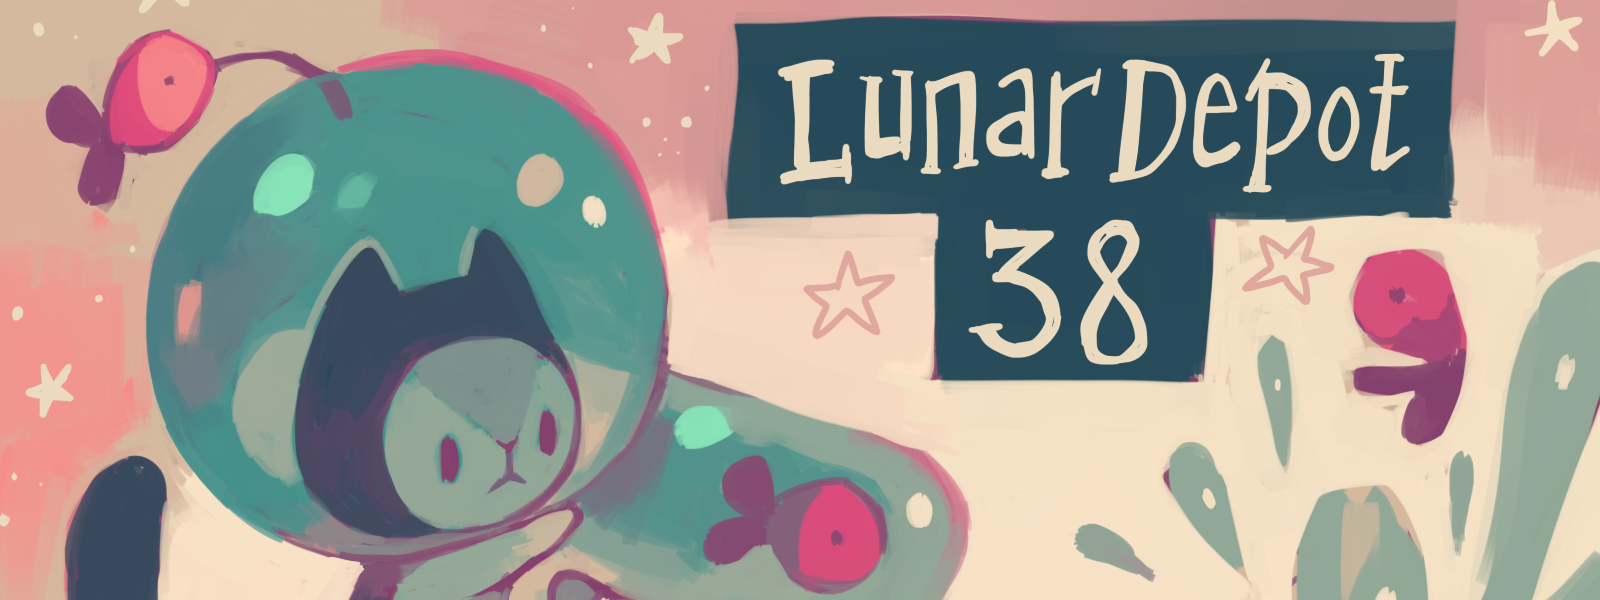 Lunar Depot 38